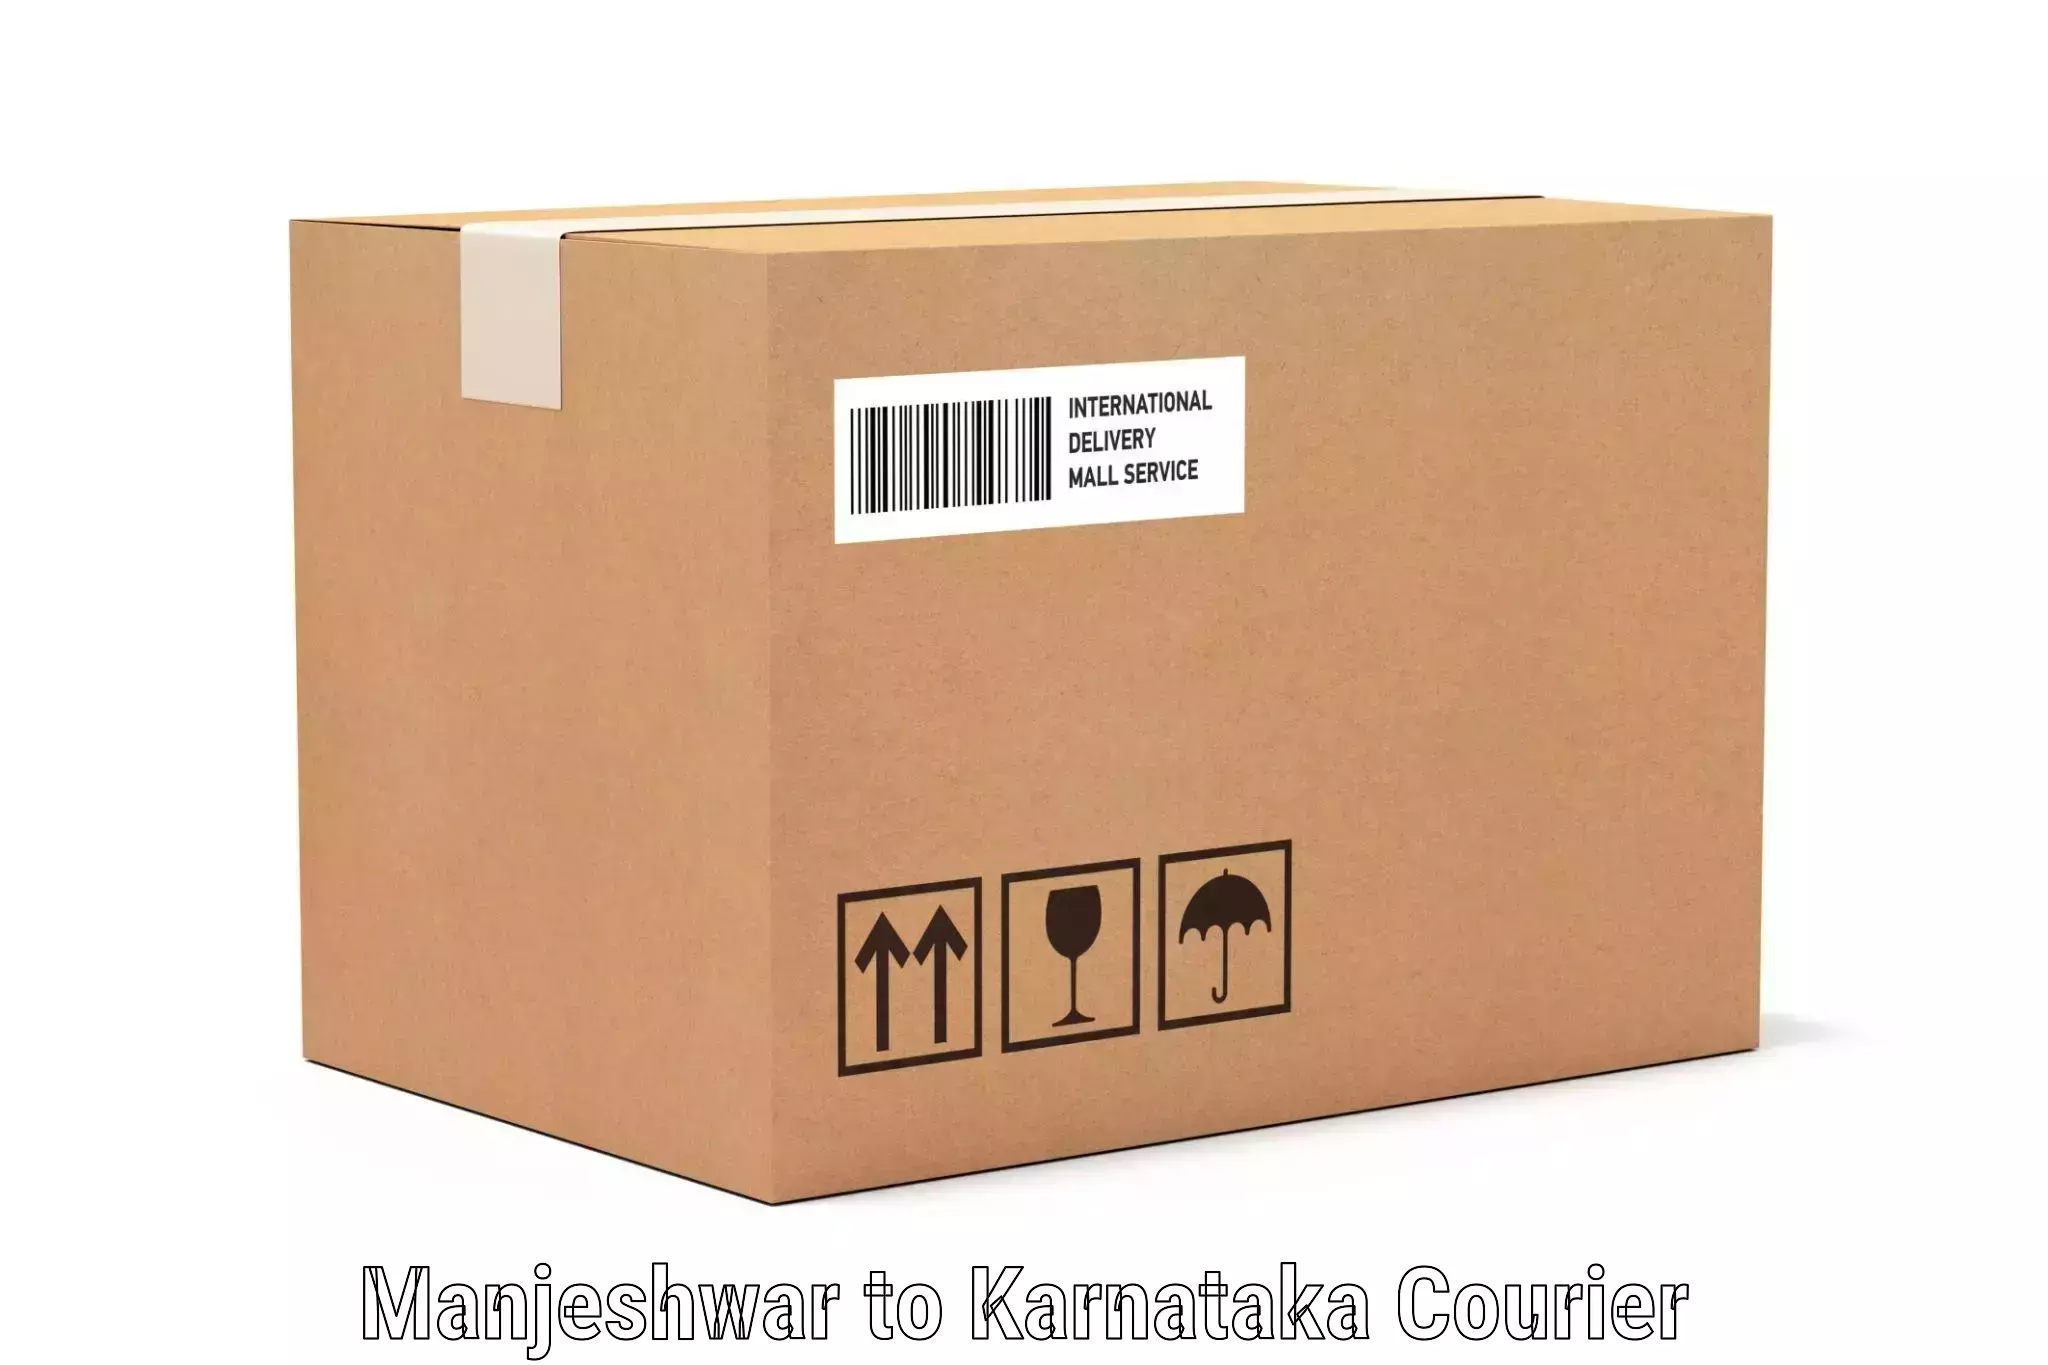 Luggage delivery logistics Manjeshwar to Karnataka